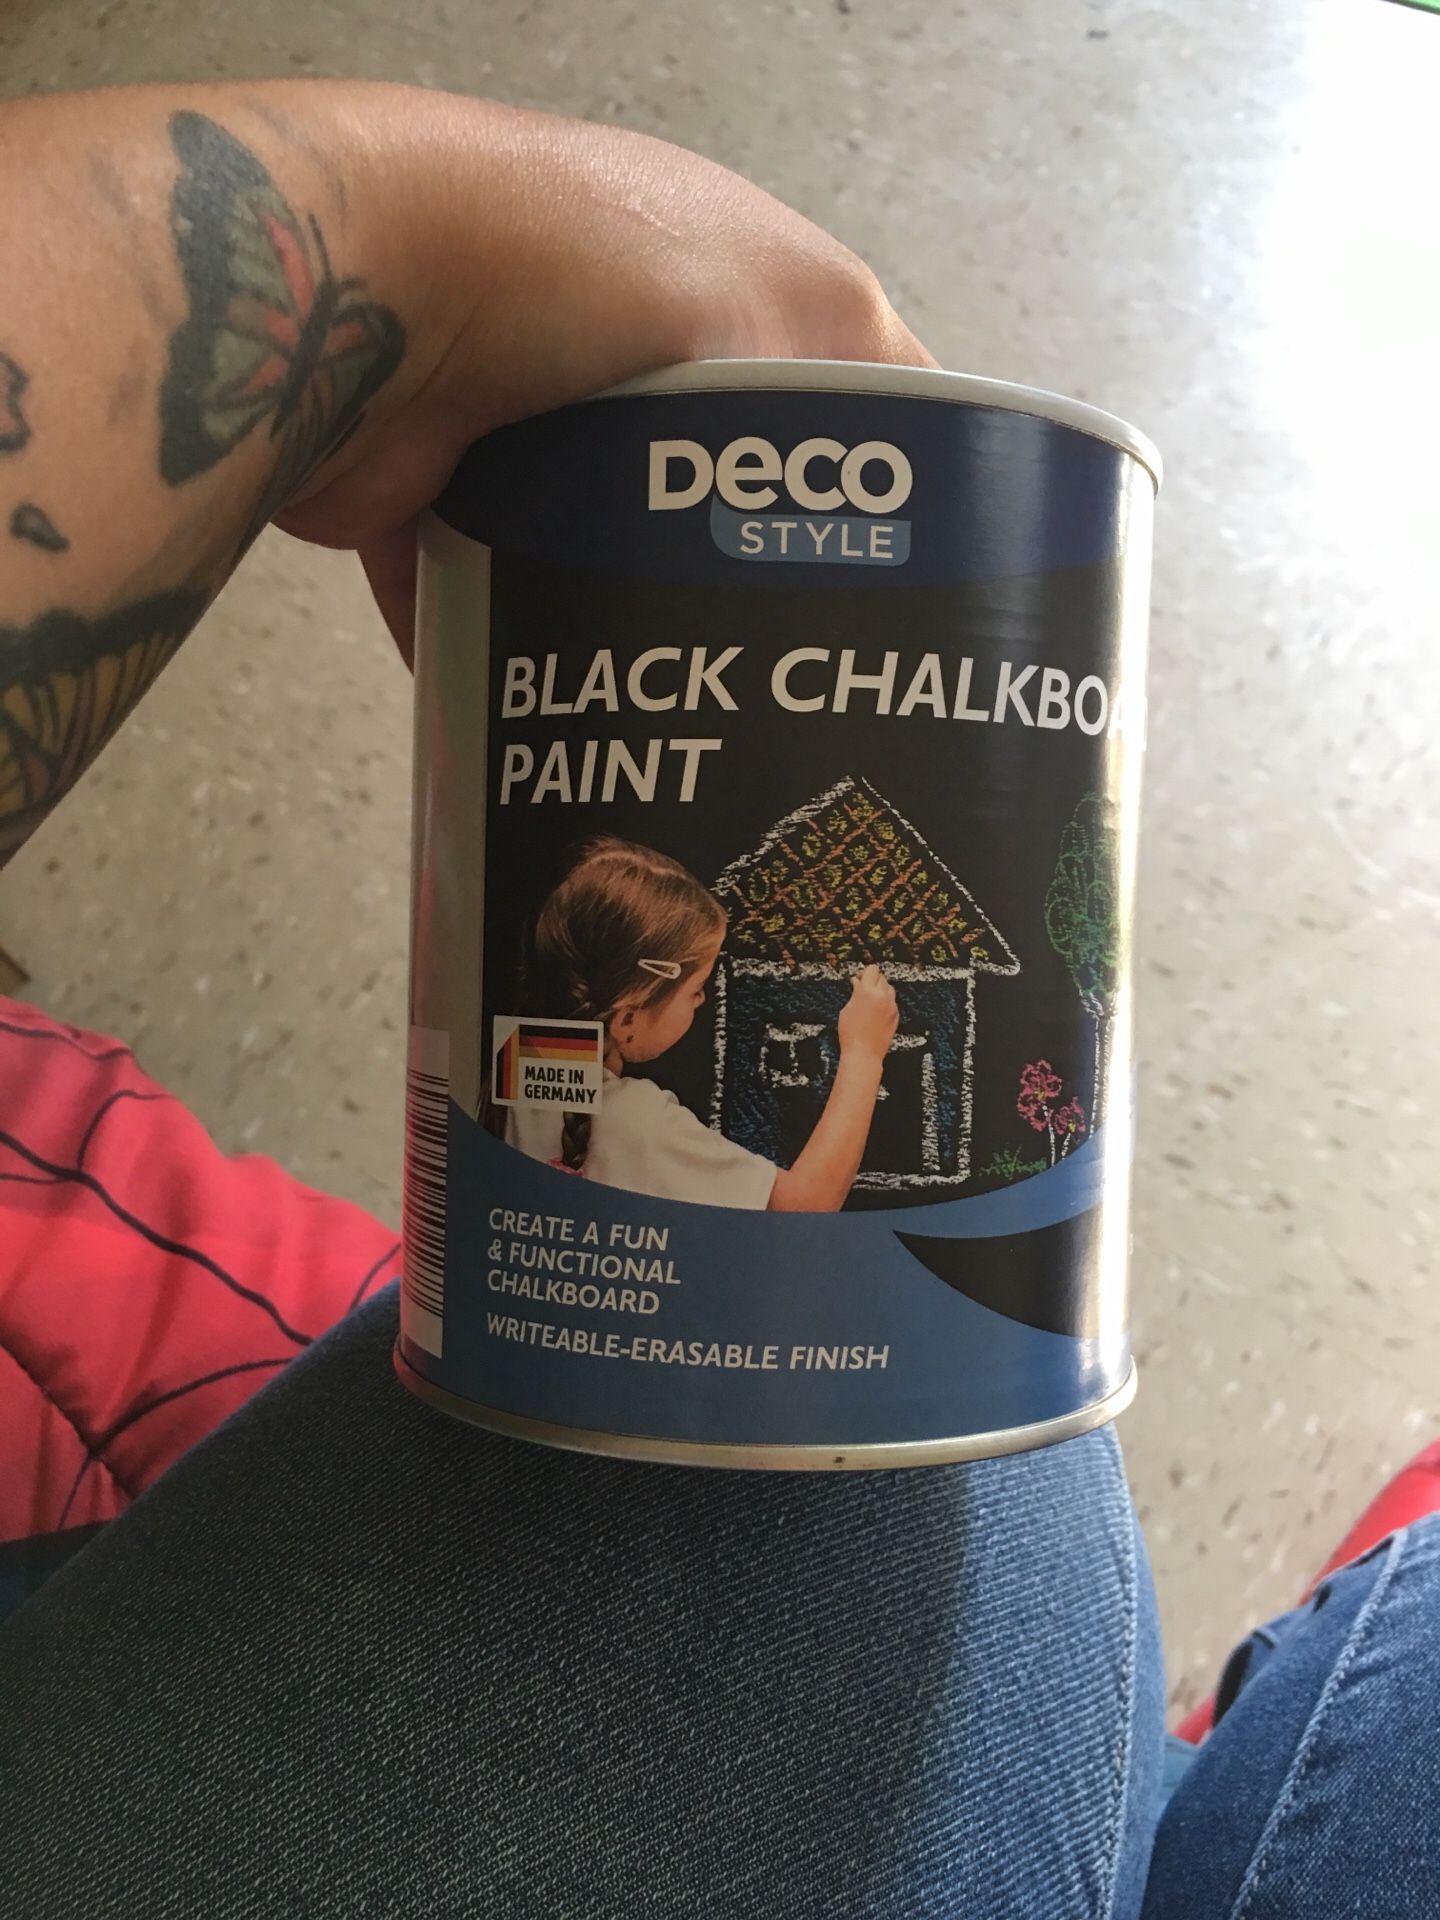 Deco chalkboard paint